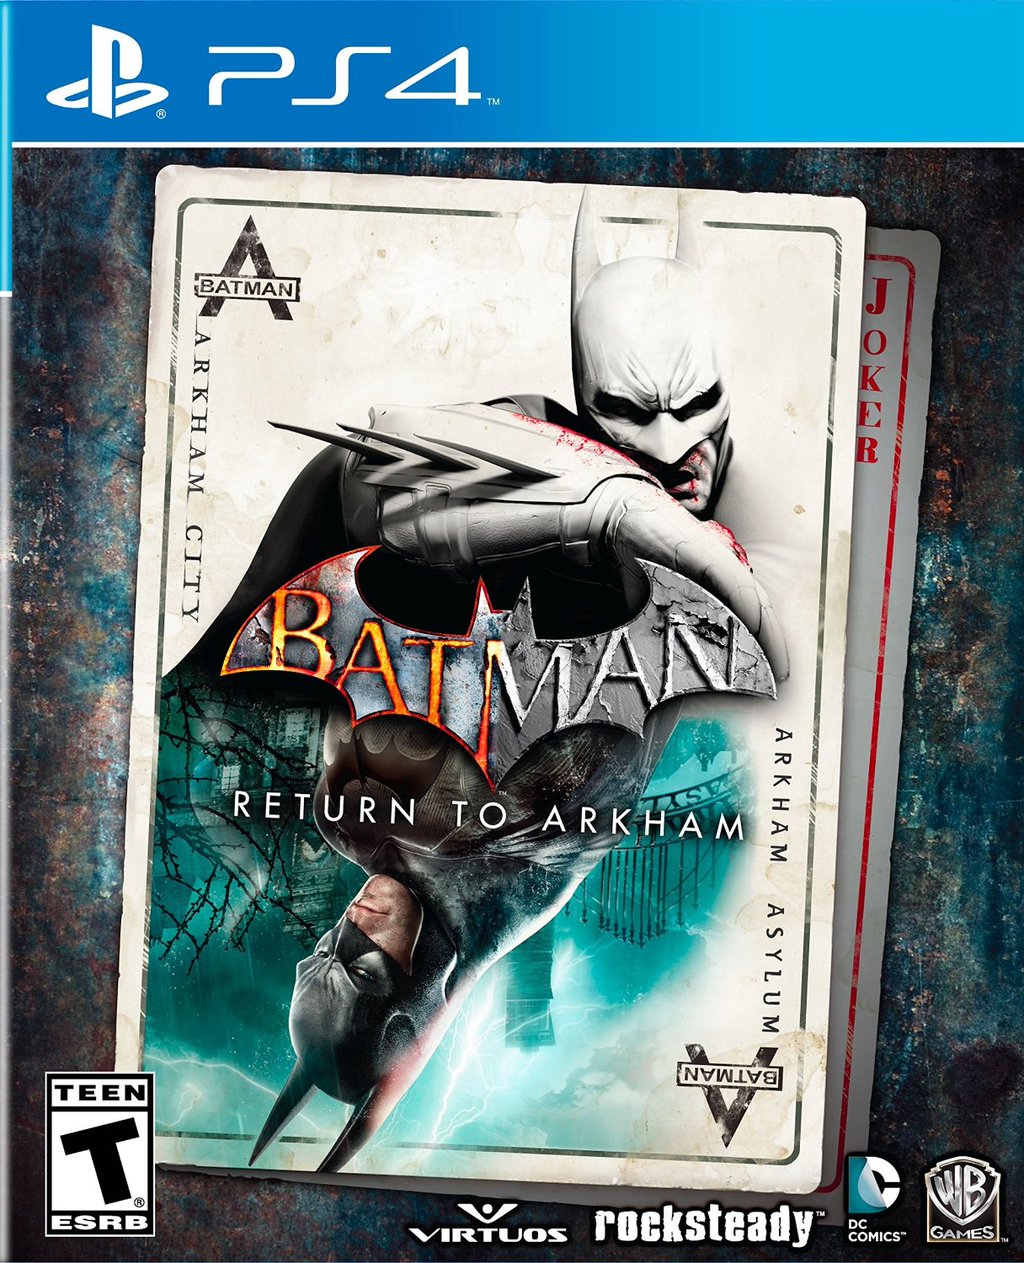 batman arkham asylum pc game